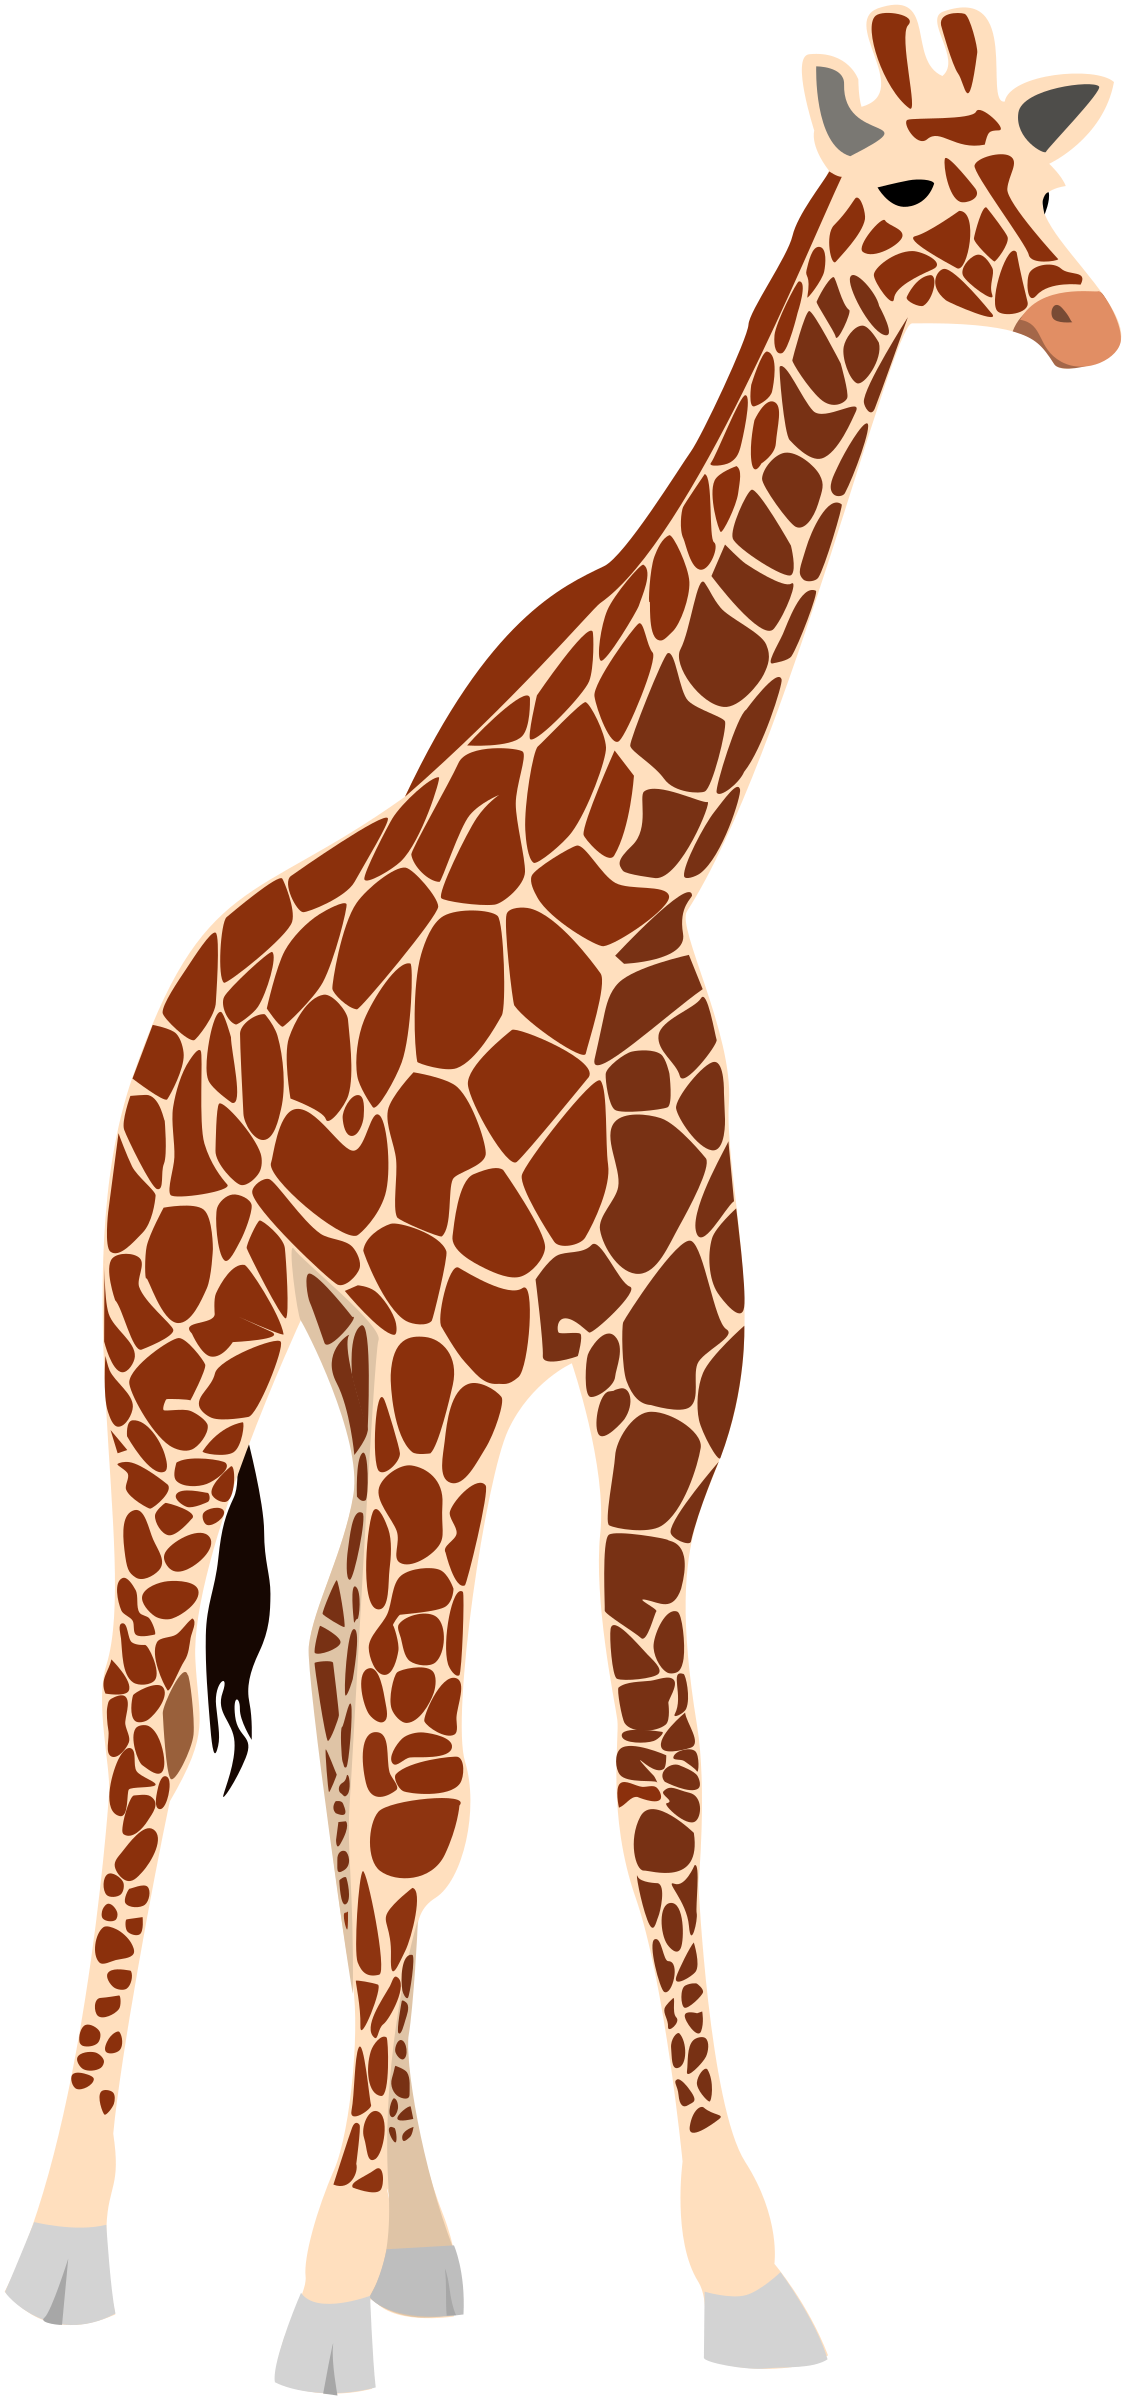 clipart images giraffe